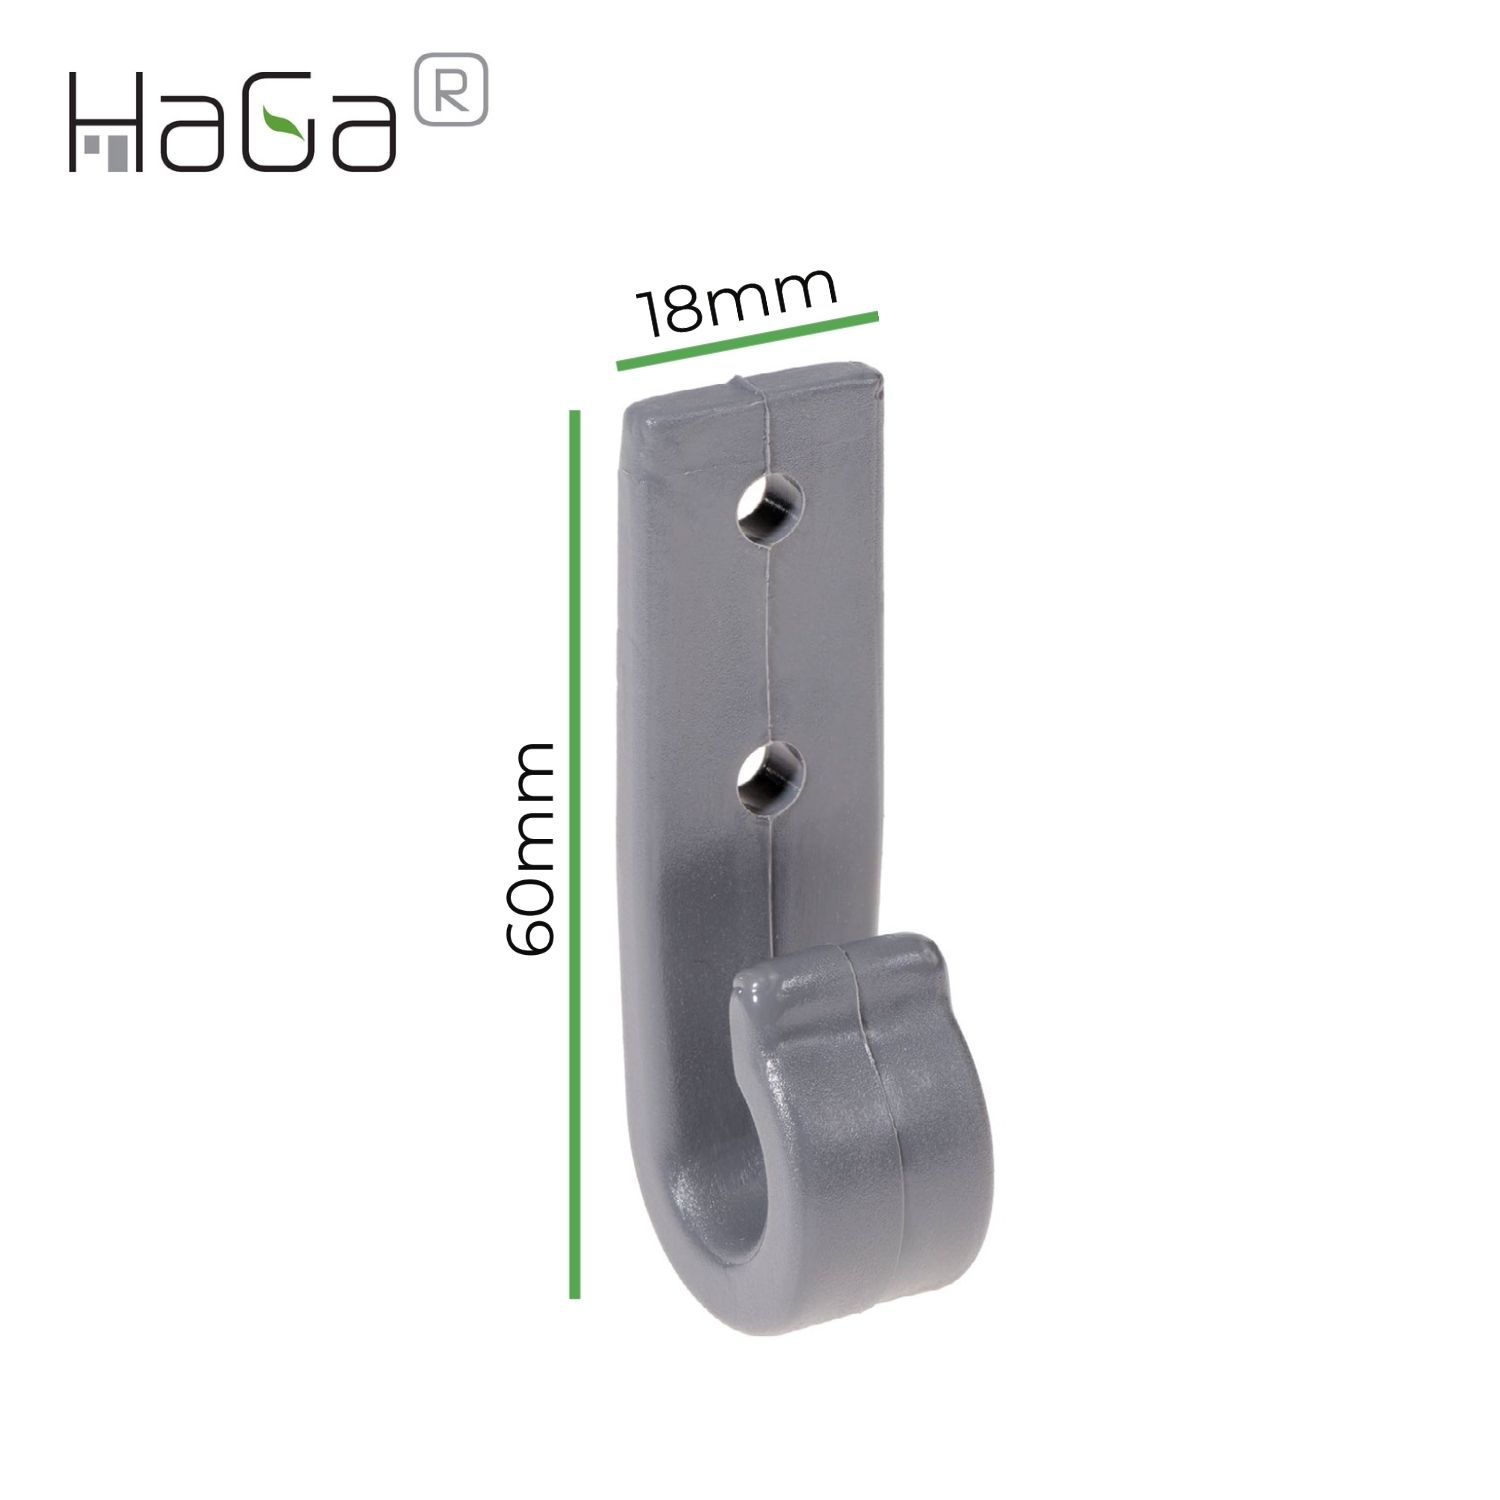 Planenhaken Zweilochhaken für Schleuderverschluss HaGa® 60mm x 18mm 10 Stück